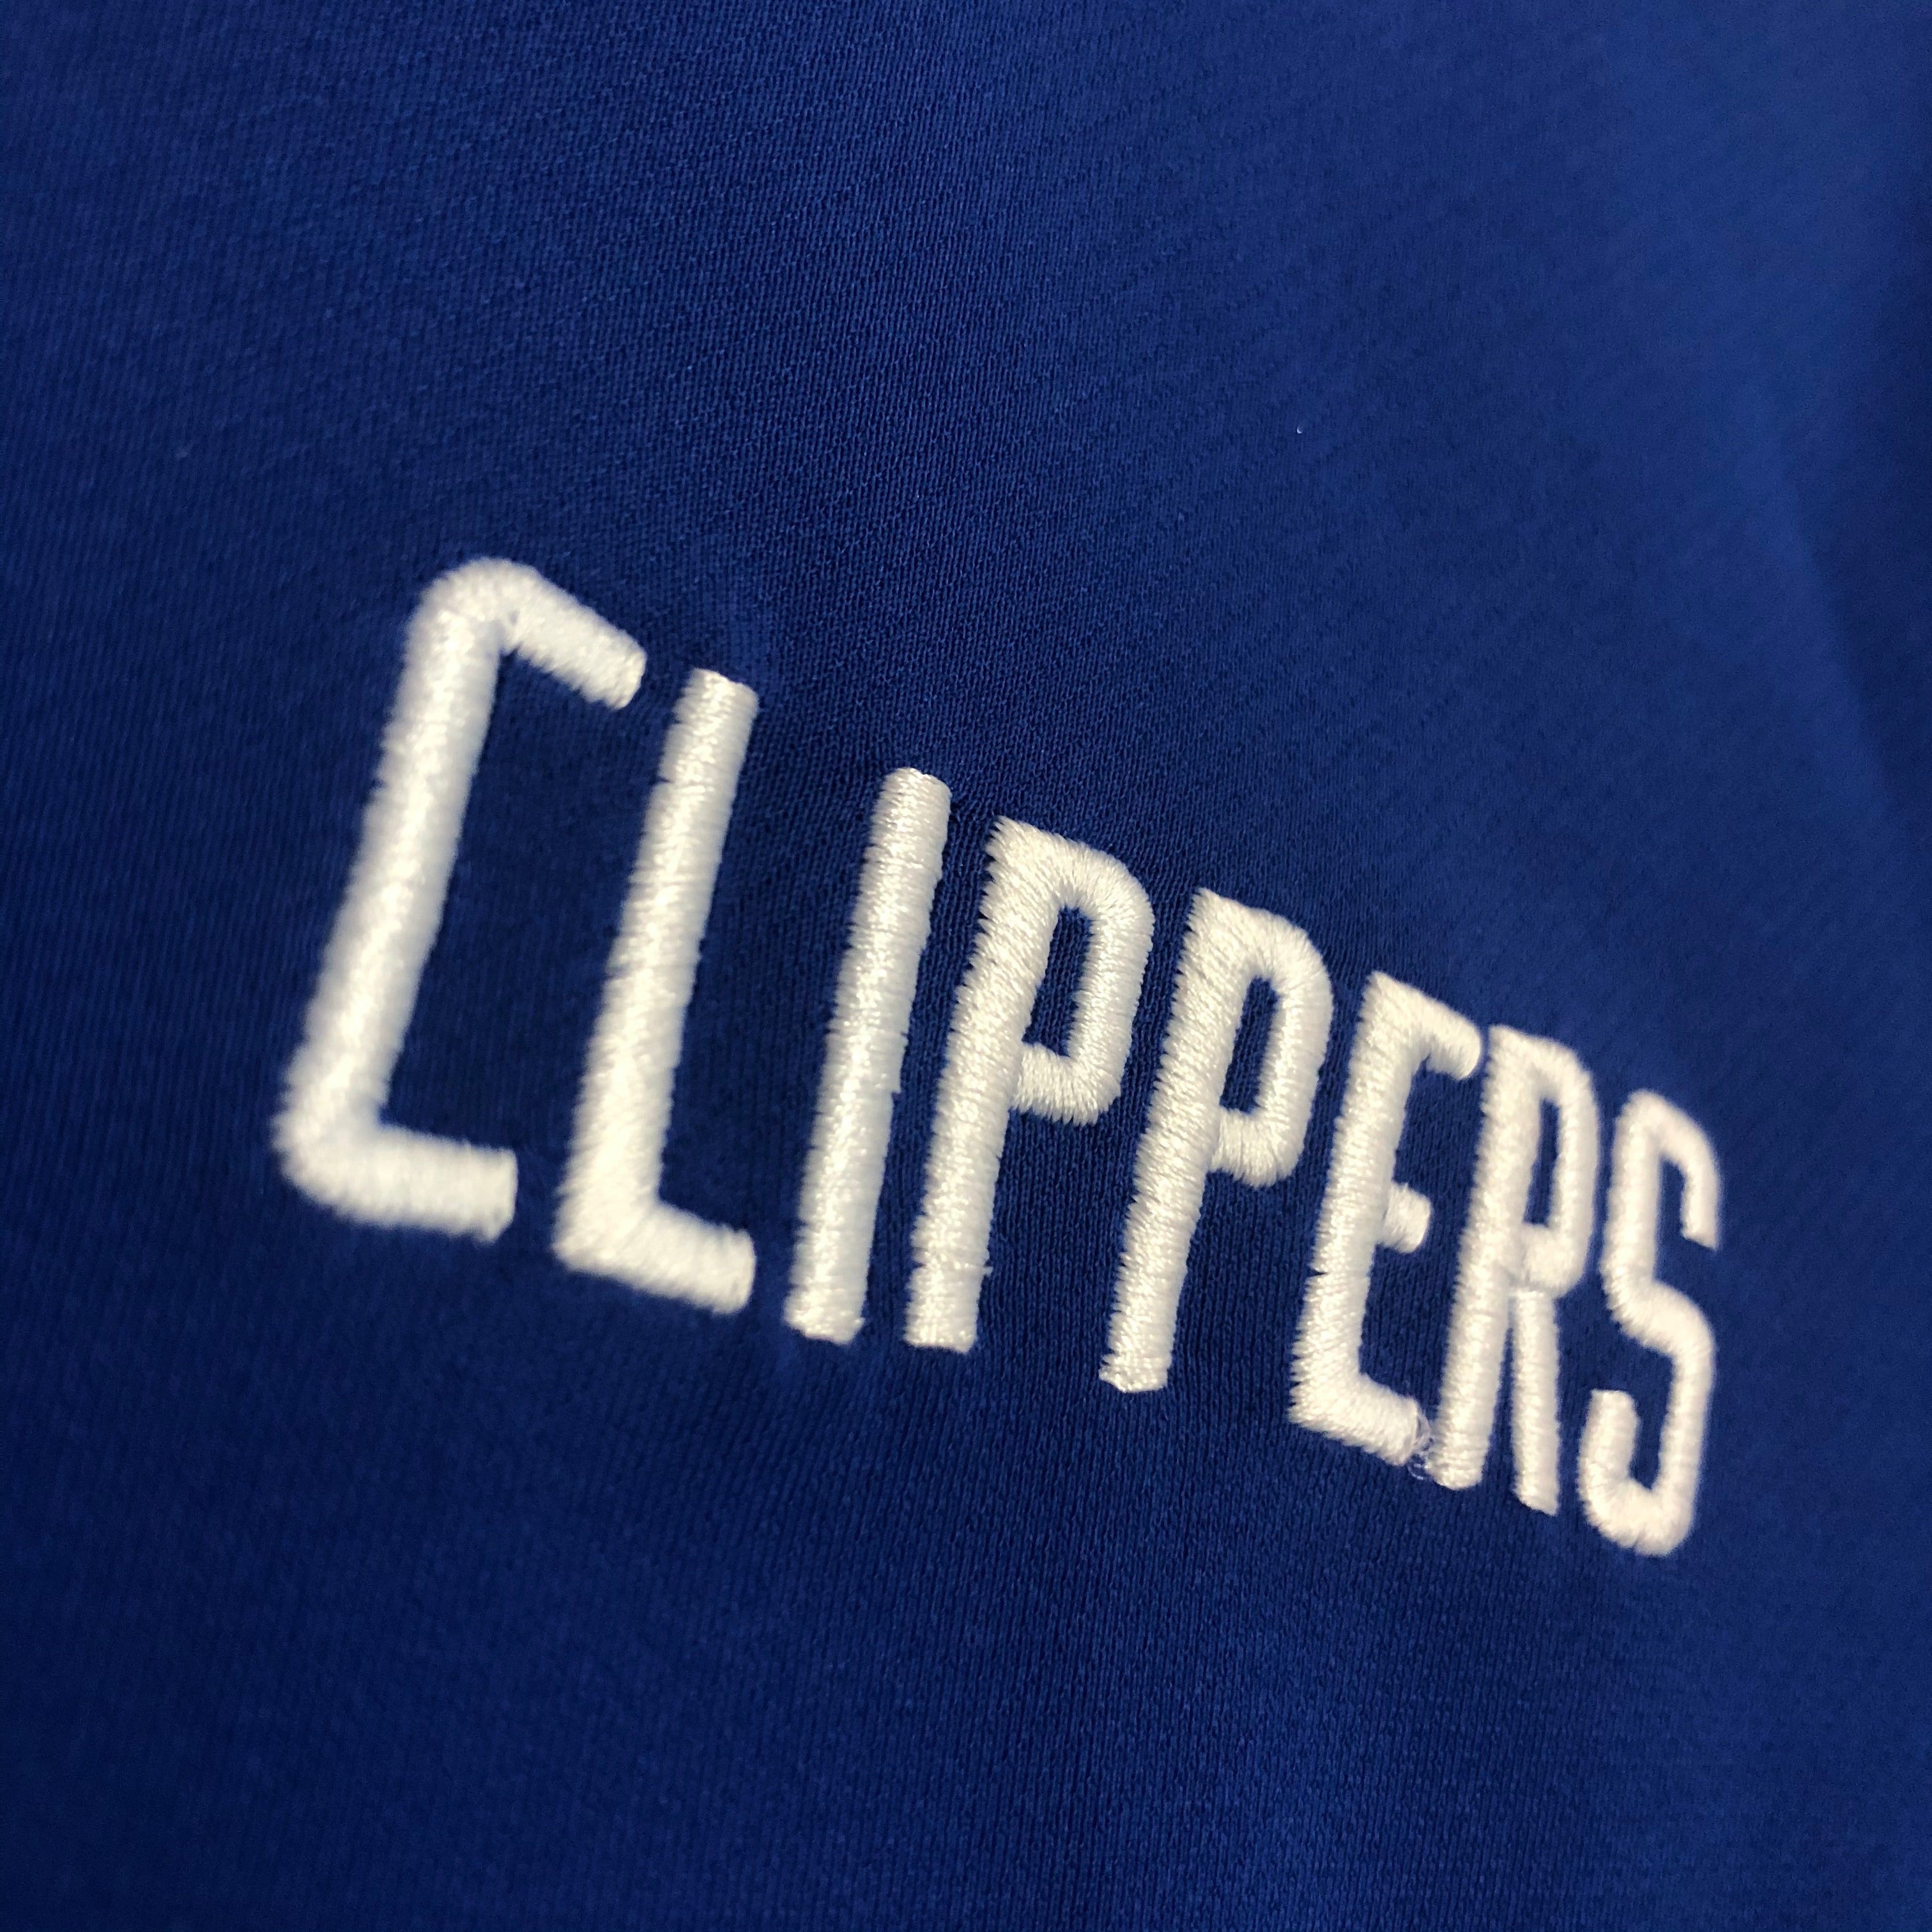 LA Clippers Hoopen? NBA Zip-Up Hoodie